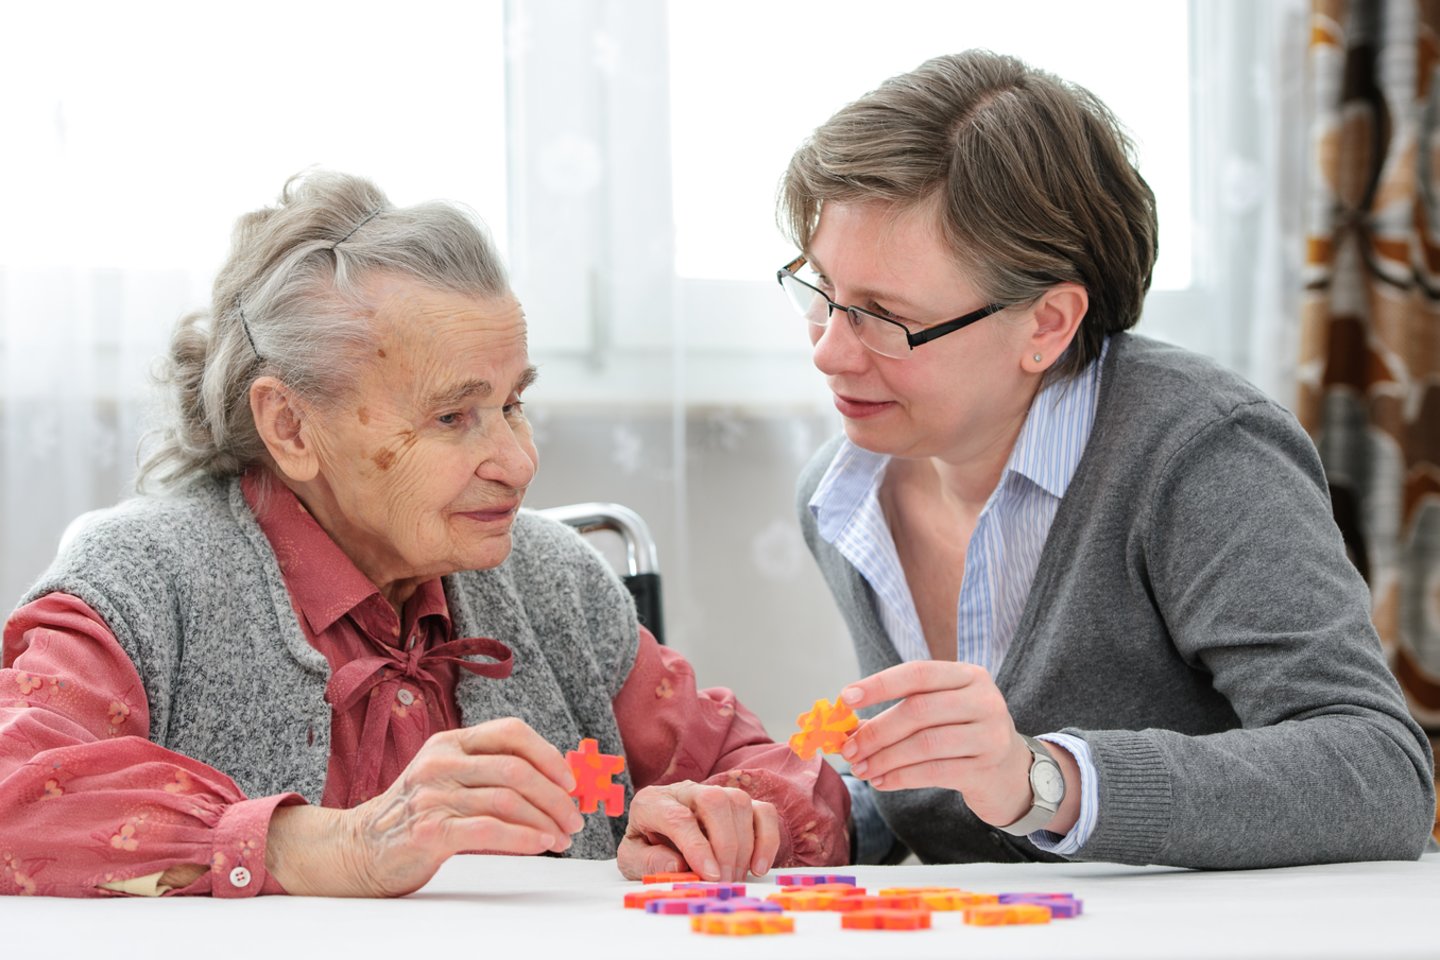 Alzheimerio asociacijos duomenimis, 2050 metais net iki 3% visų senyvo amžiaus žmonių gali turėti demencijos simptomų.<br>123rf nuotr.